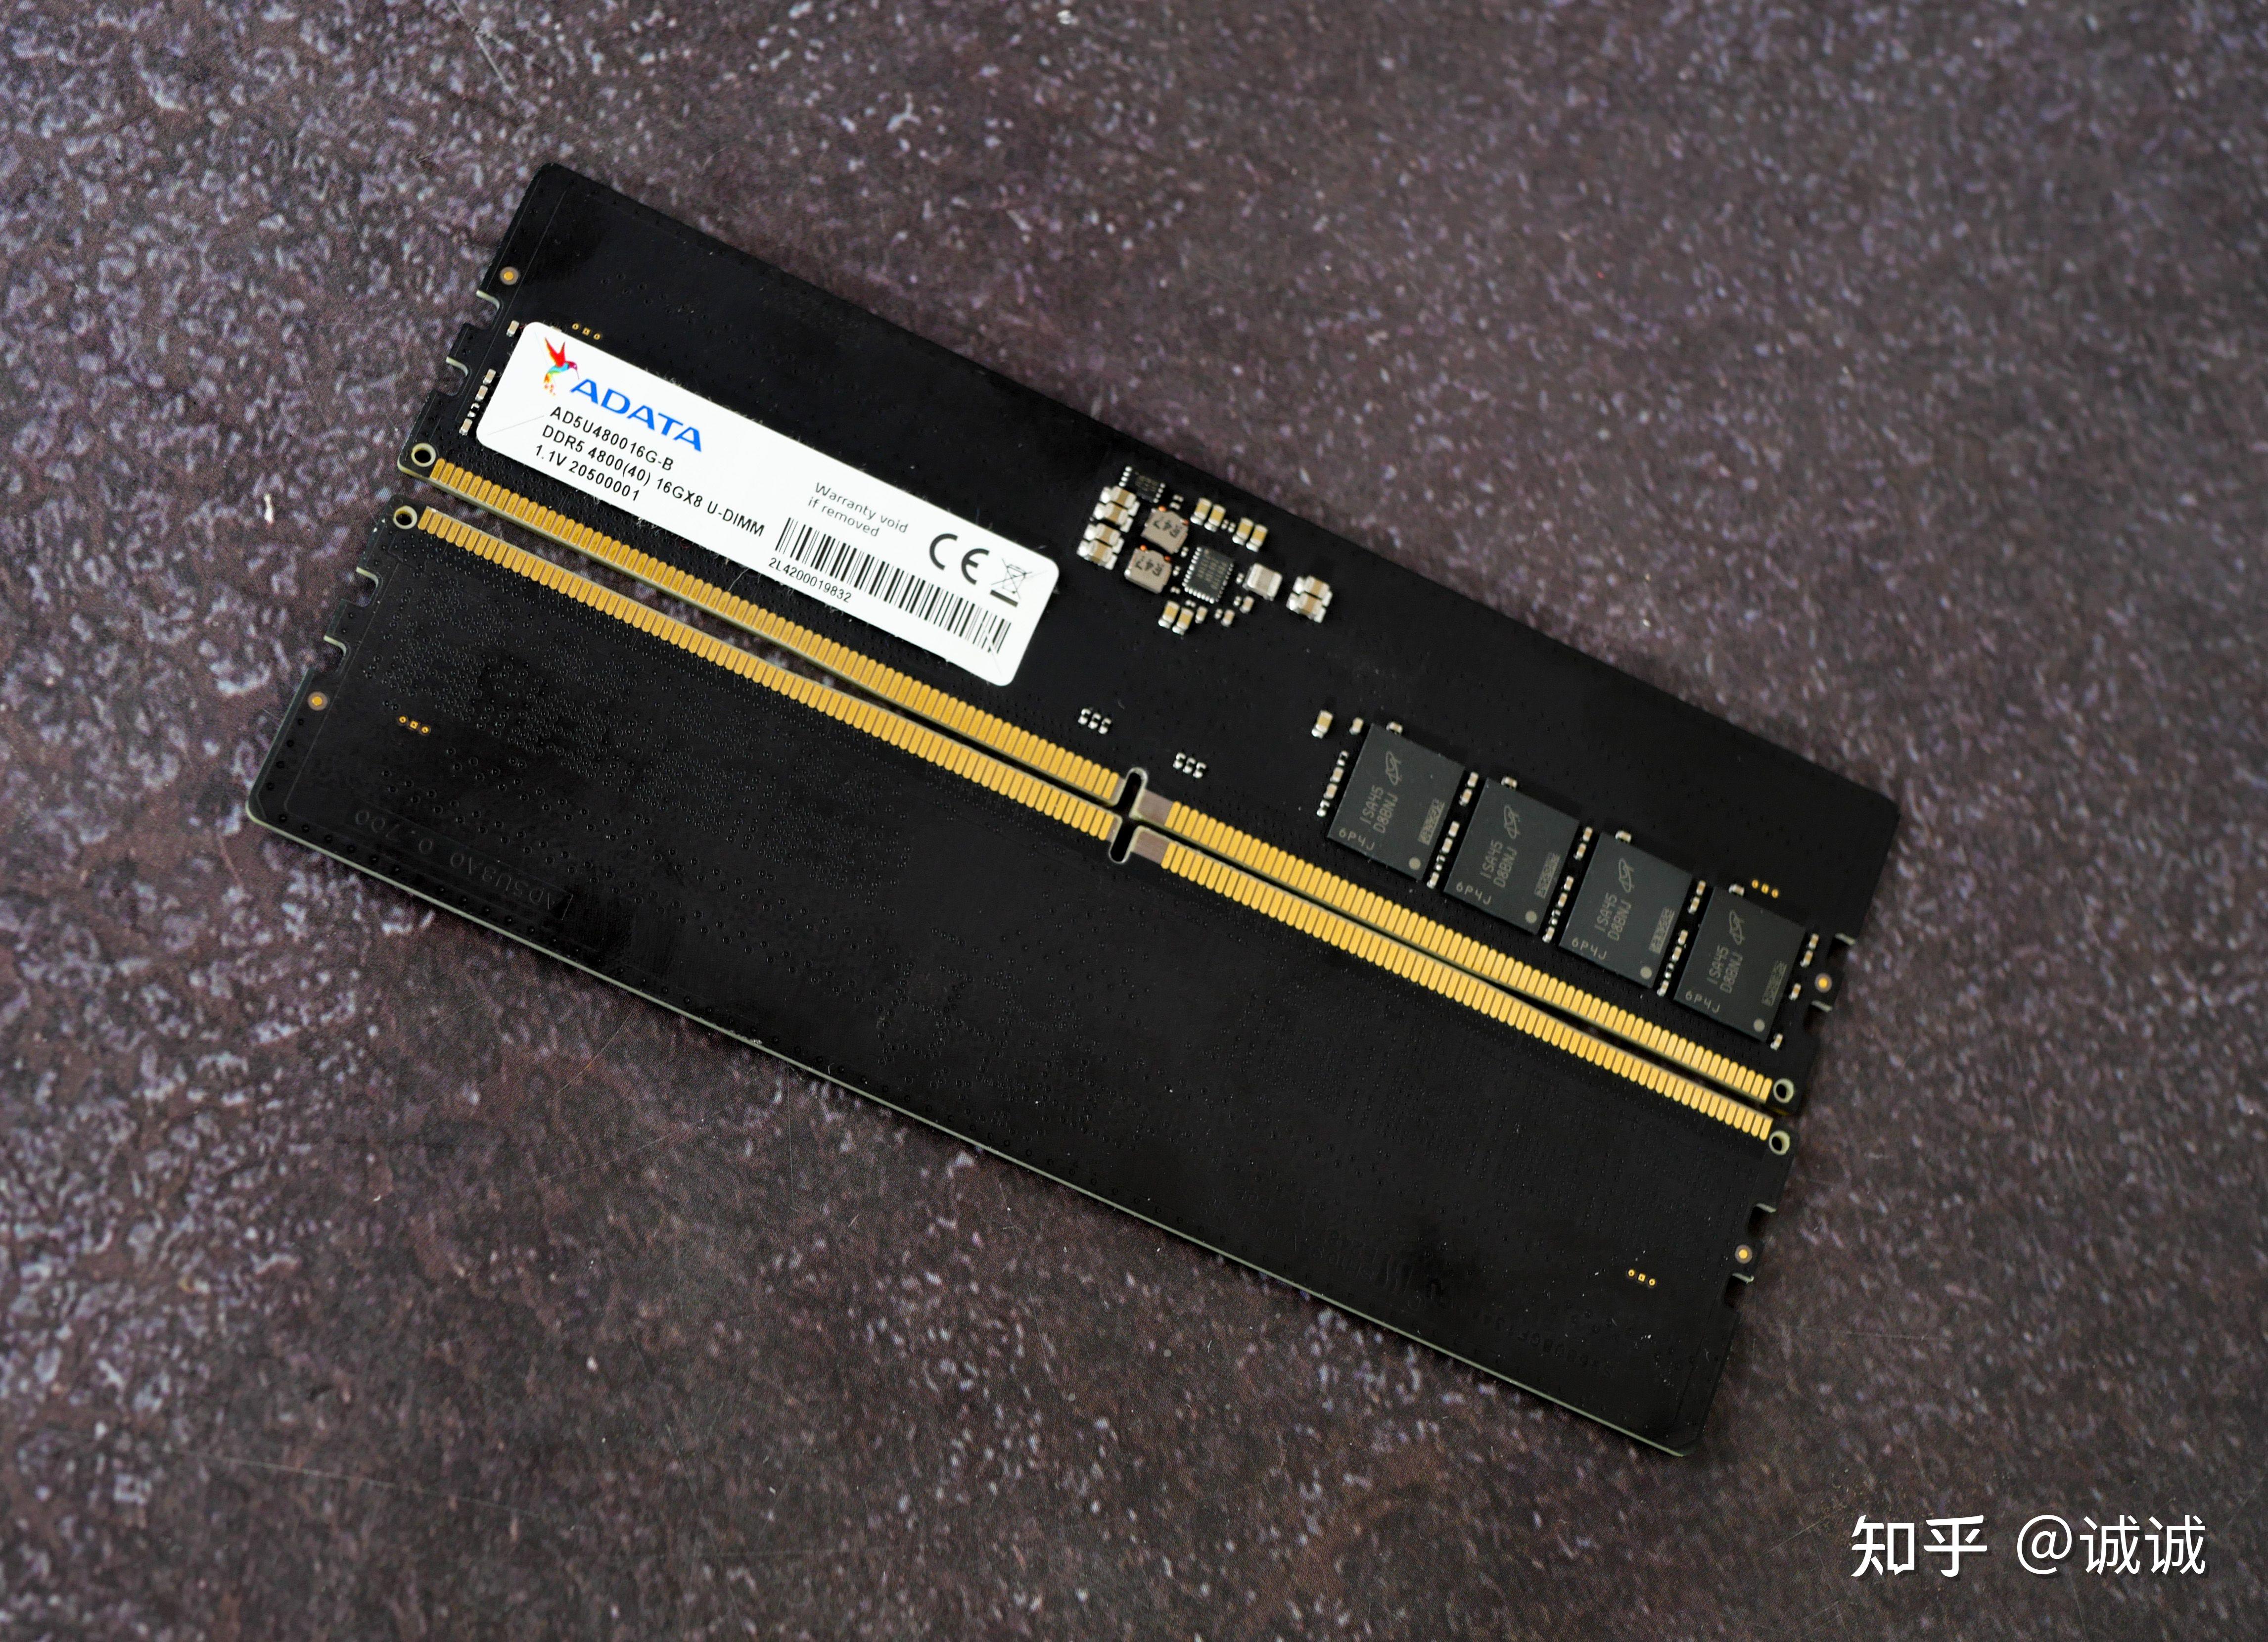 红米游戏手机是否真的搭载 DDR5 内存？实际测试揭秘真相  第4张